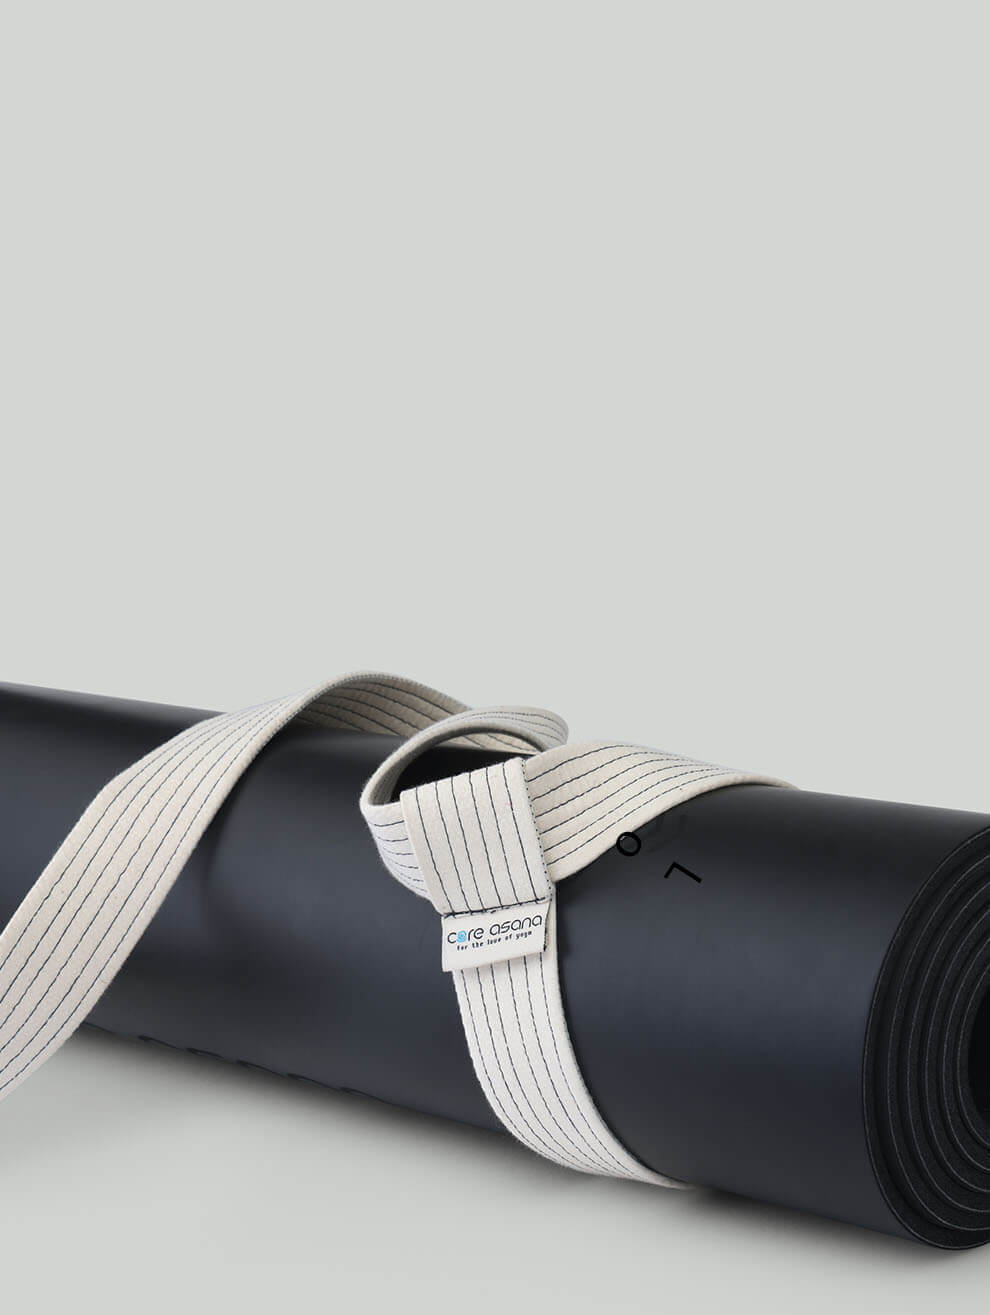 Evolve Yoga Mat Bag Black Gray Pockets Shoulder Strap Full Zip NWOT